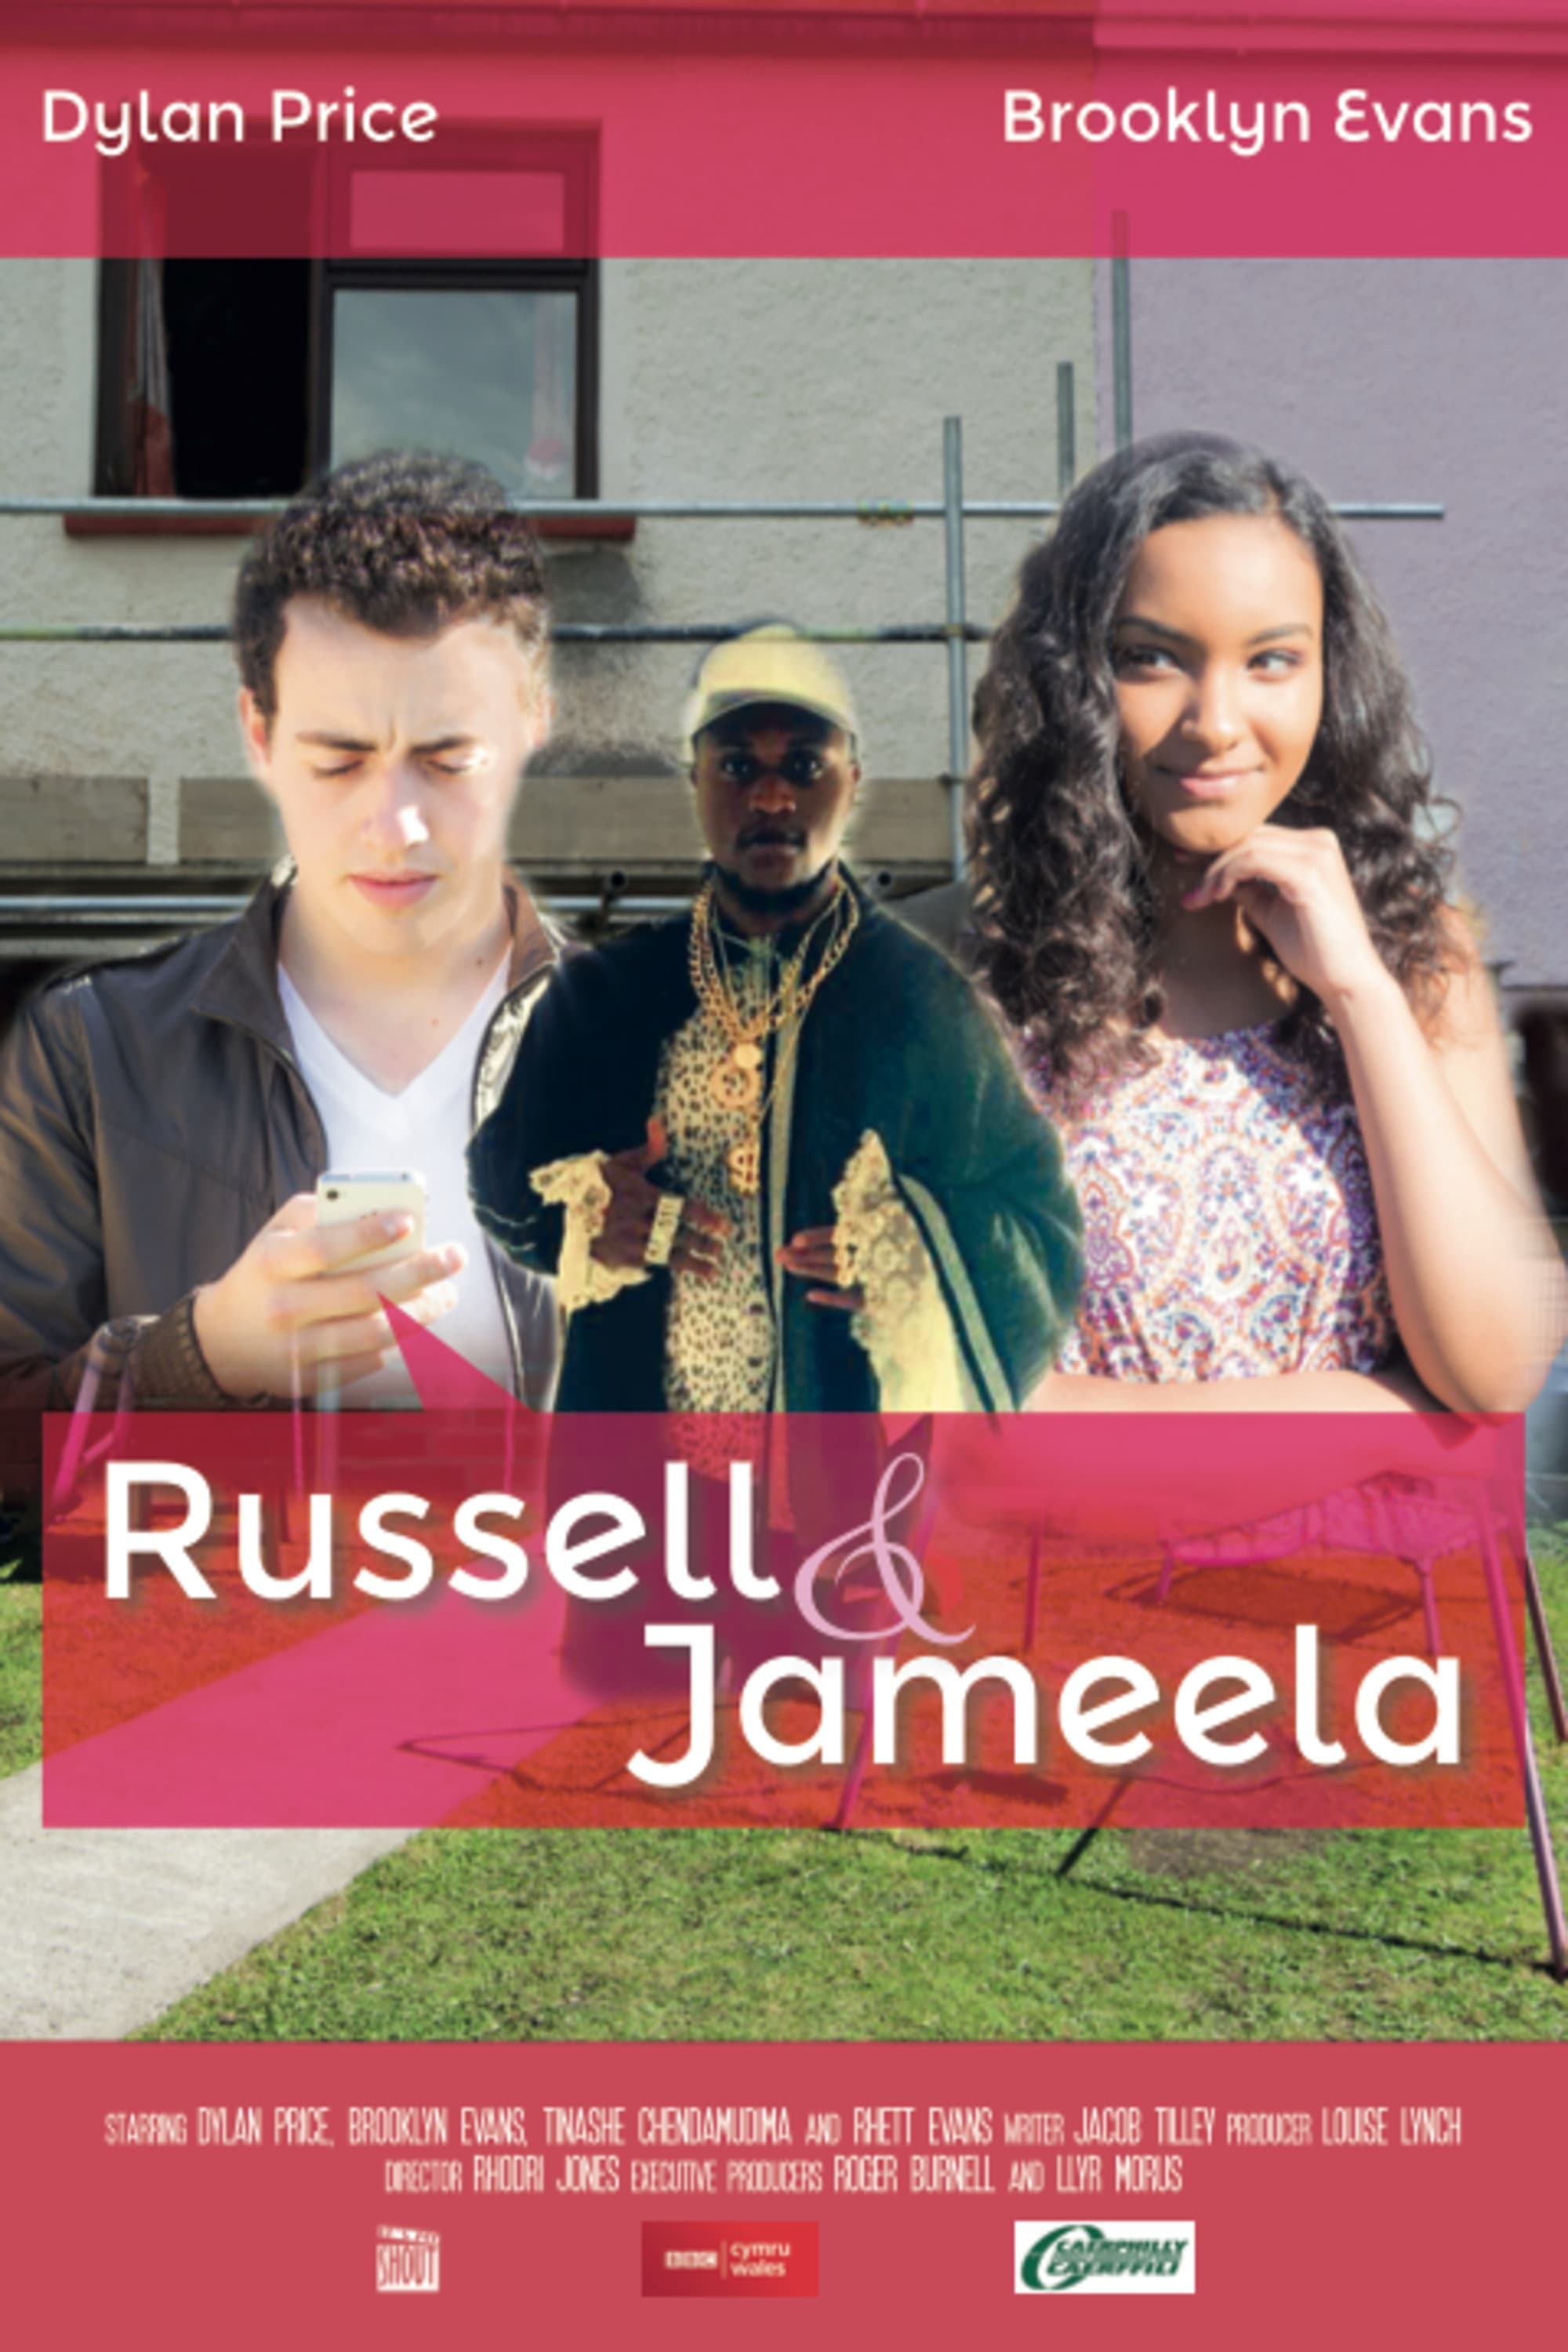 Russell & Jameela